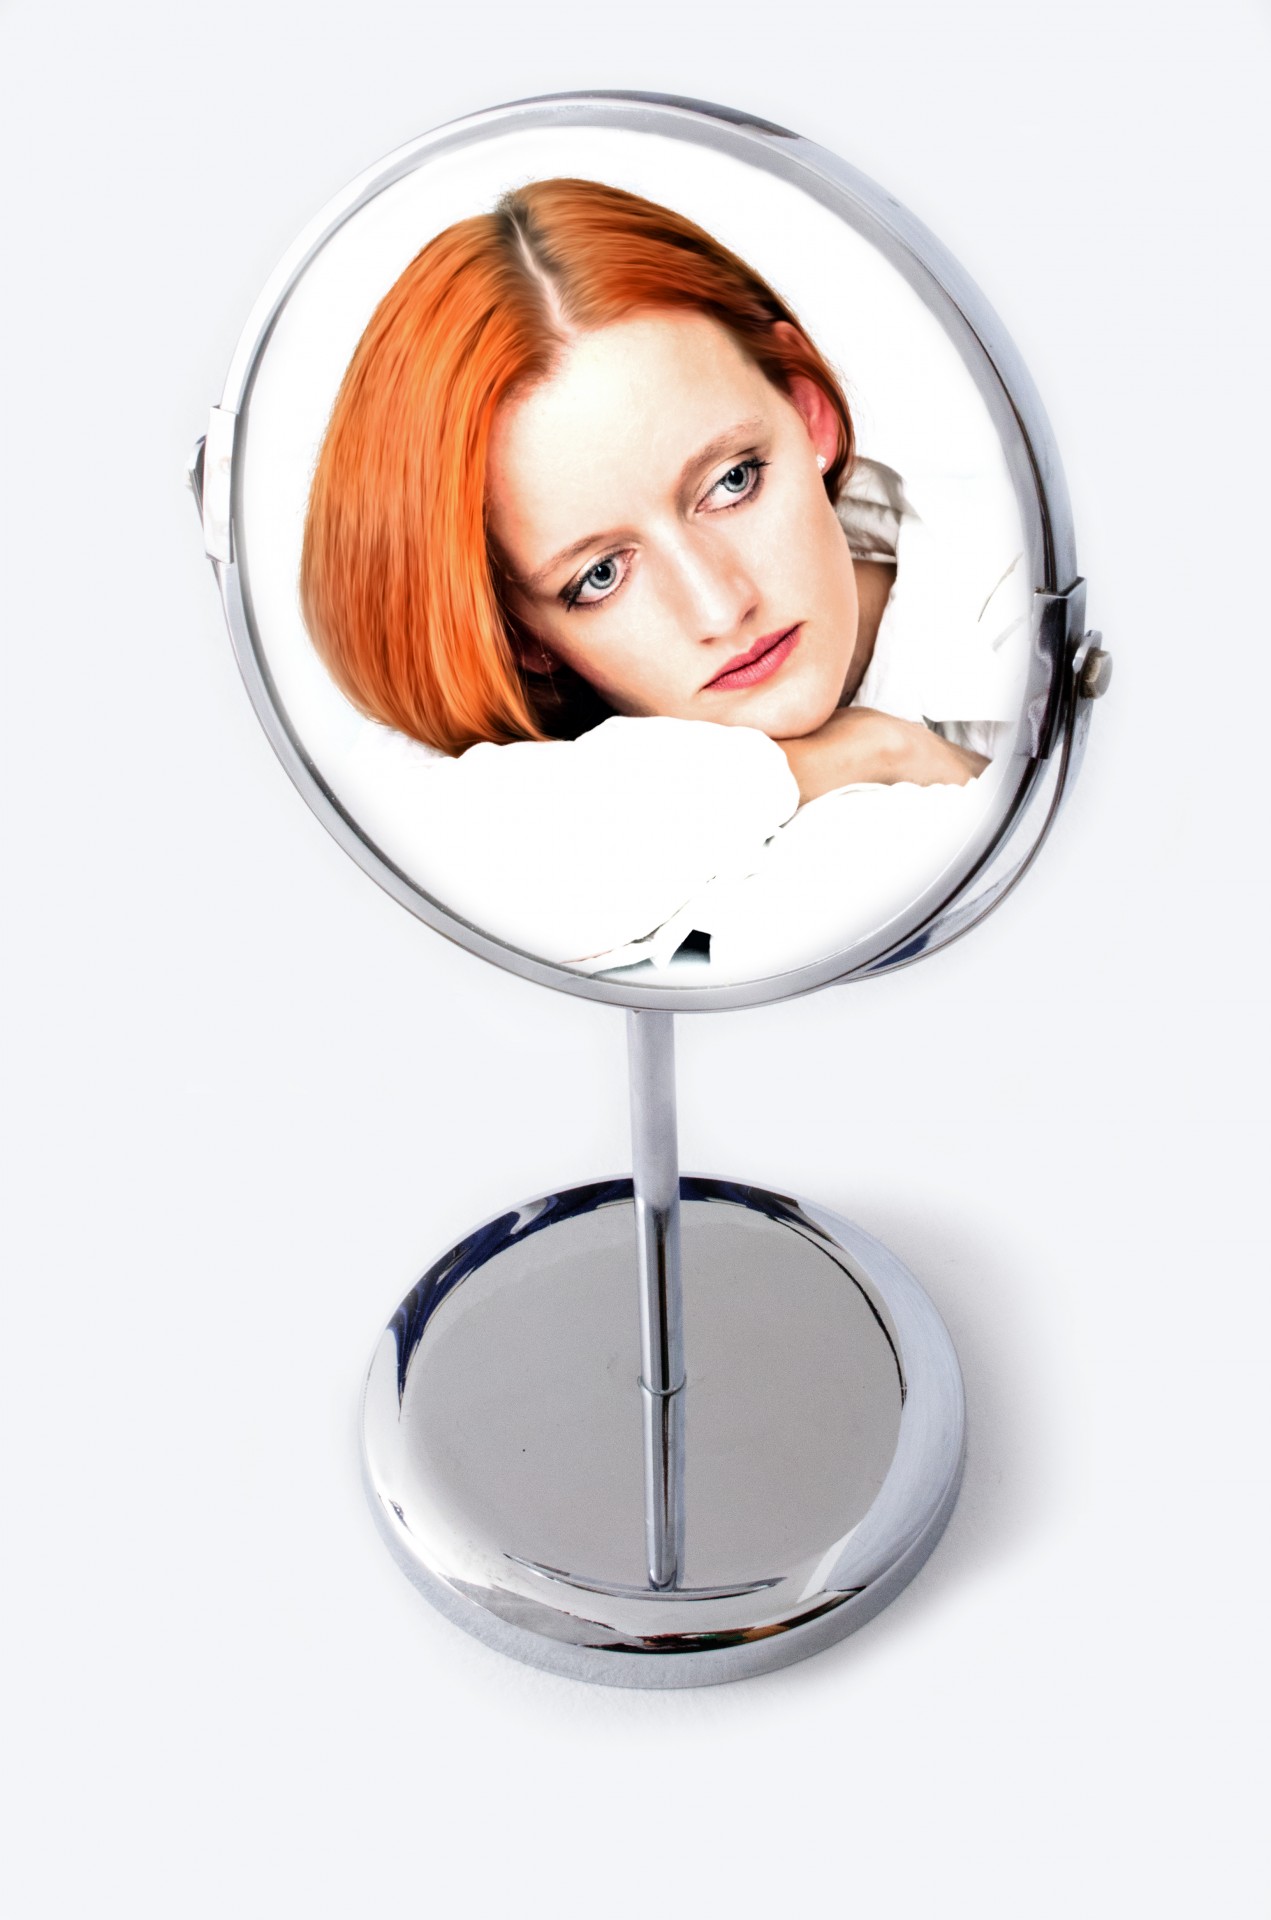 Bild von Frau im Spiegel